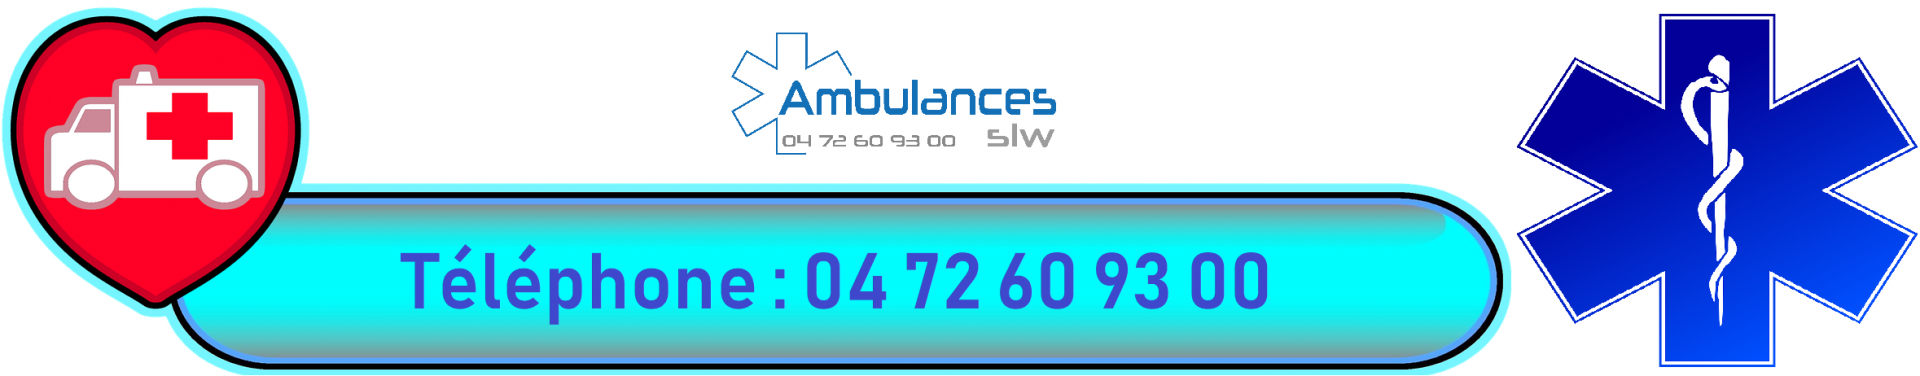 transport-ambulance-slw-lyon_